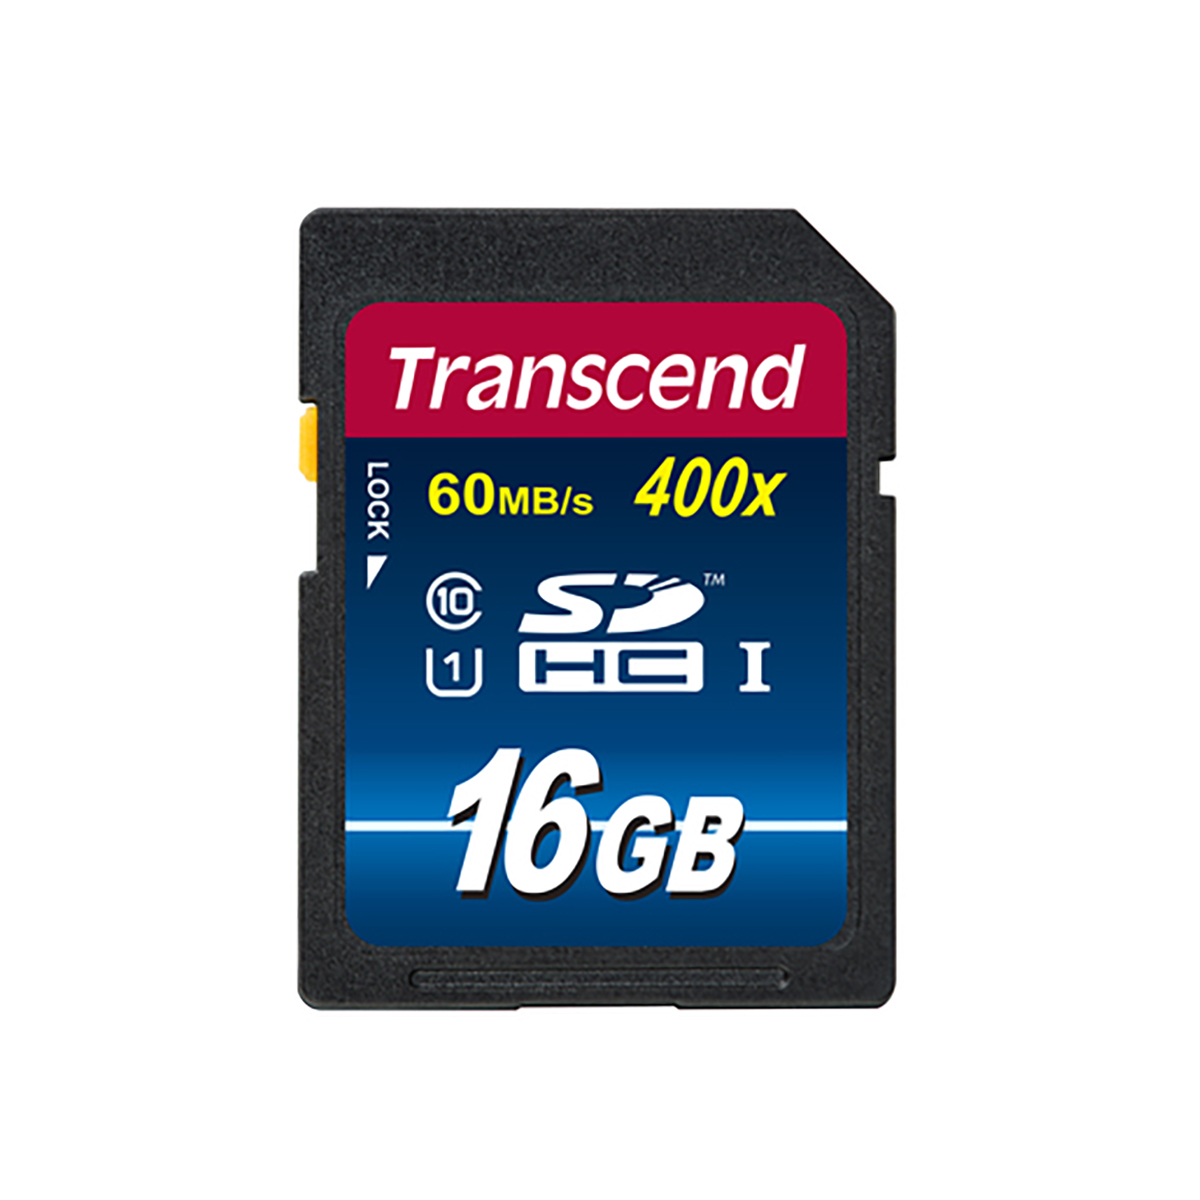 Transcend 16 GB SDHC Class10 UHS-1 400x